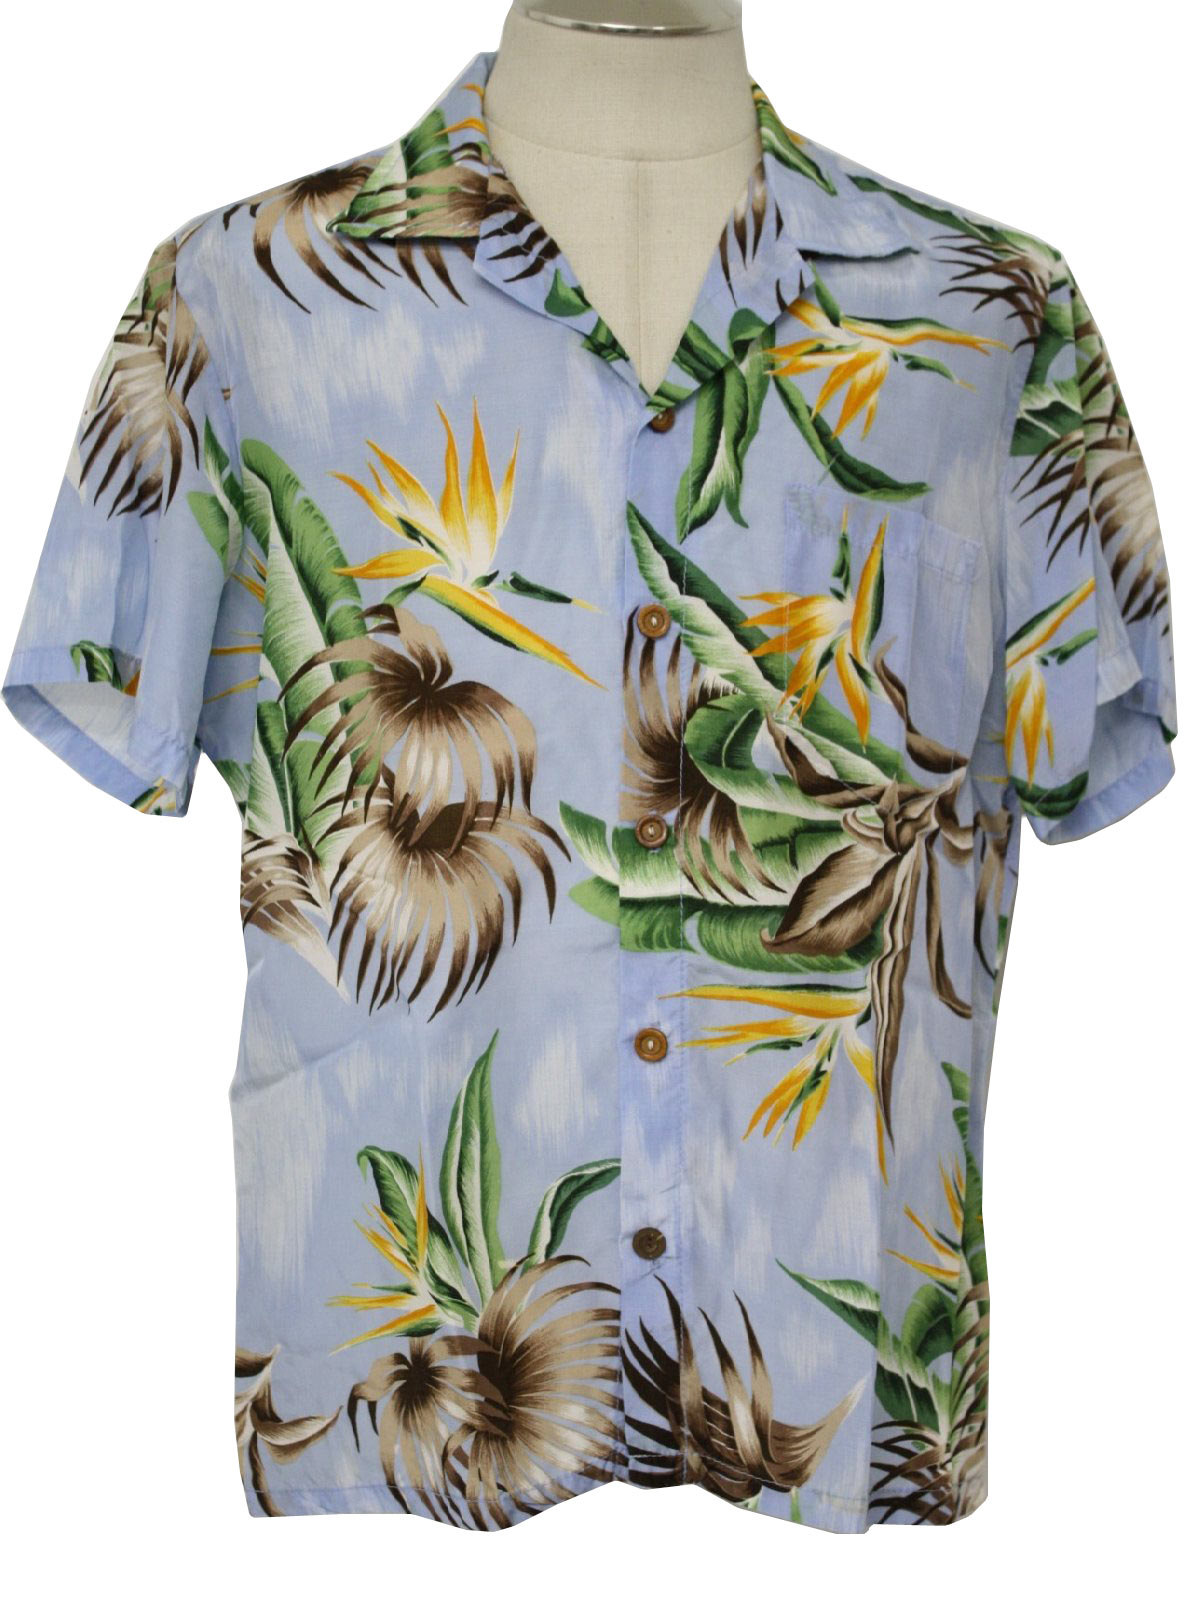 PAPUA NEW GUINEA CLOTHS SHOP ON LINE: Pacific Button Shirts